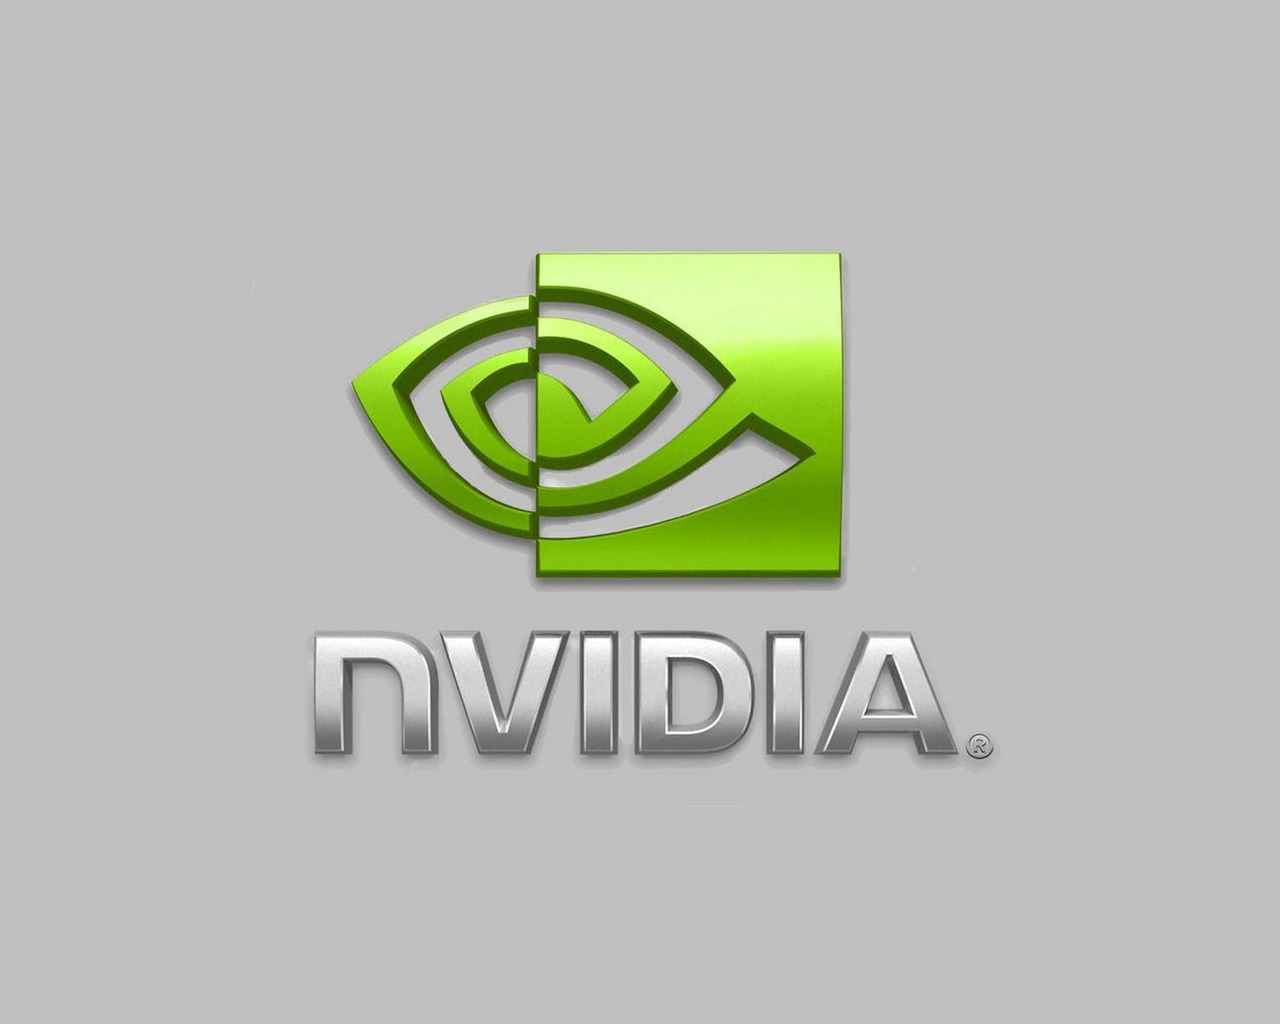 nVIDIA Logo for 1280 x 1024 resolution